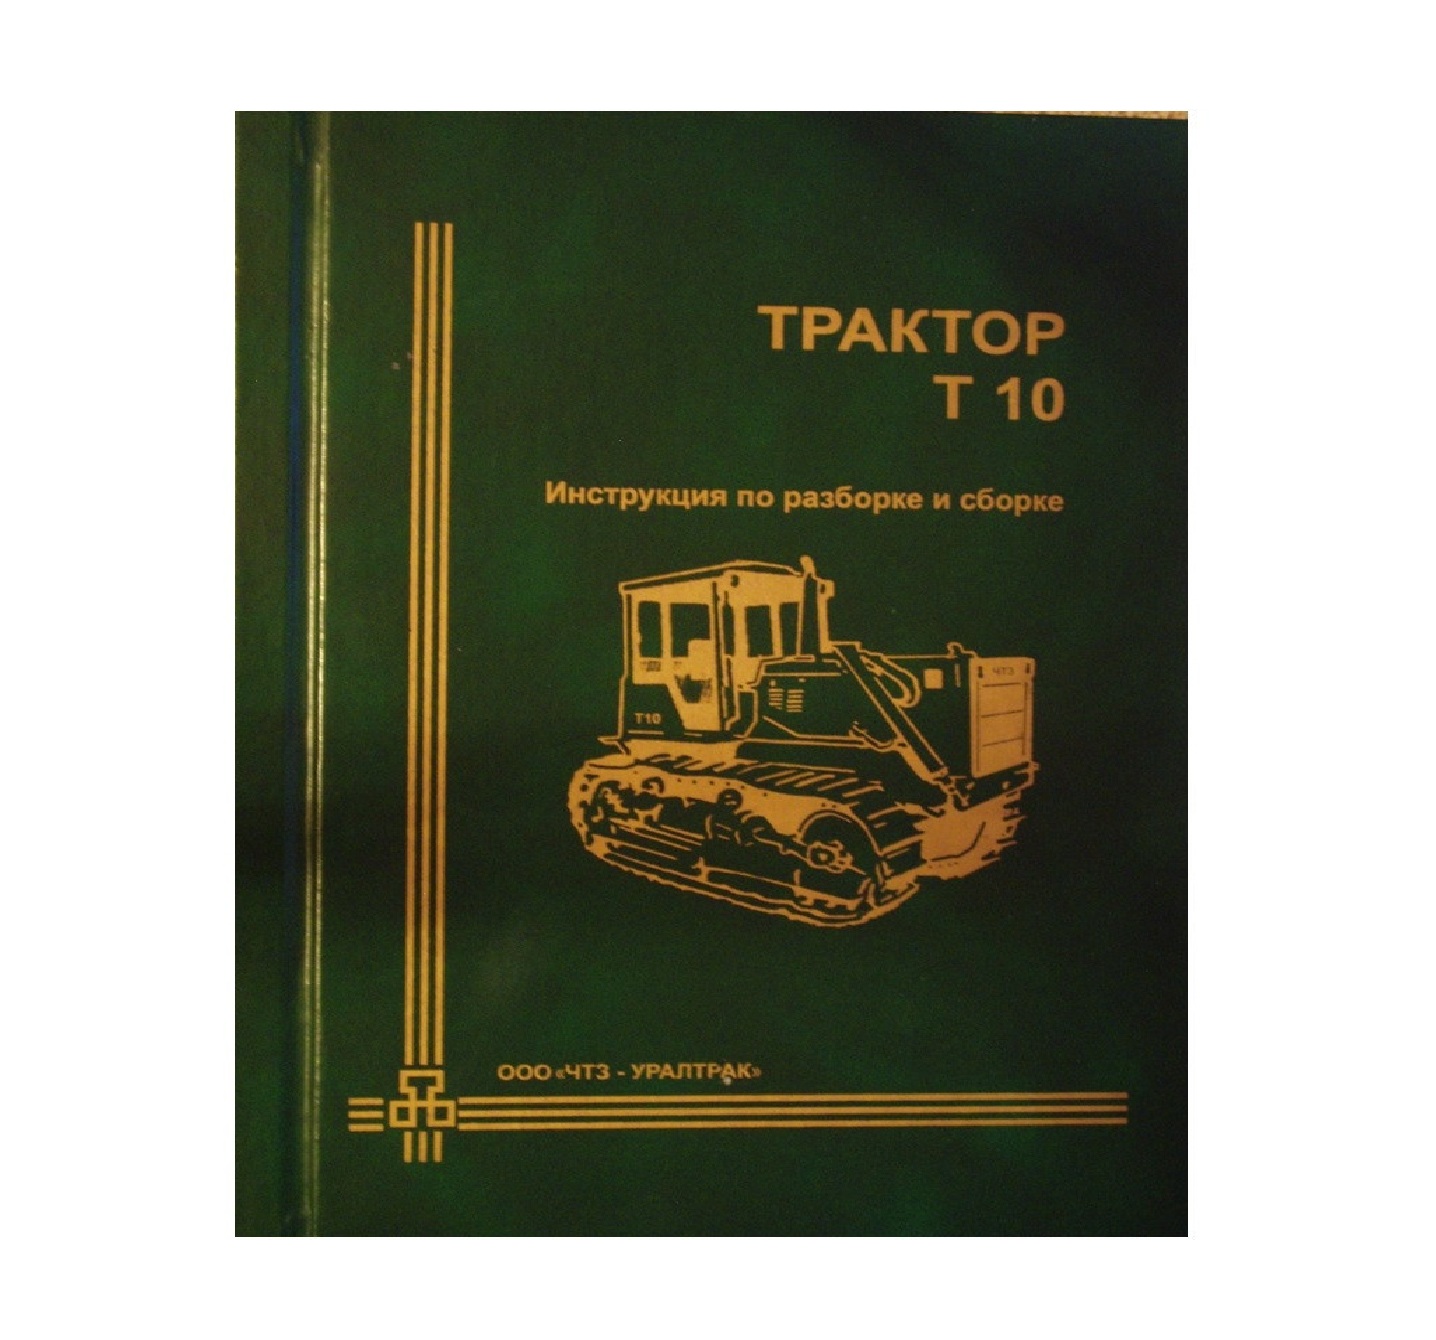 catalog/Foto/InstrukciyaporazborkeisborkeT-170